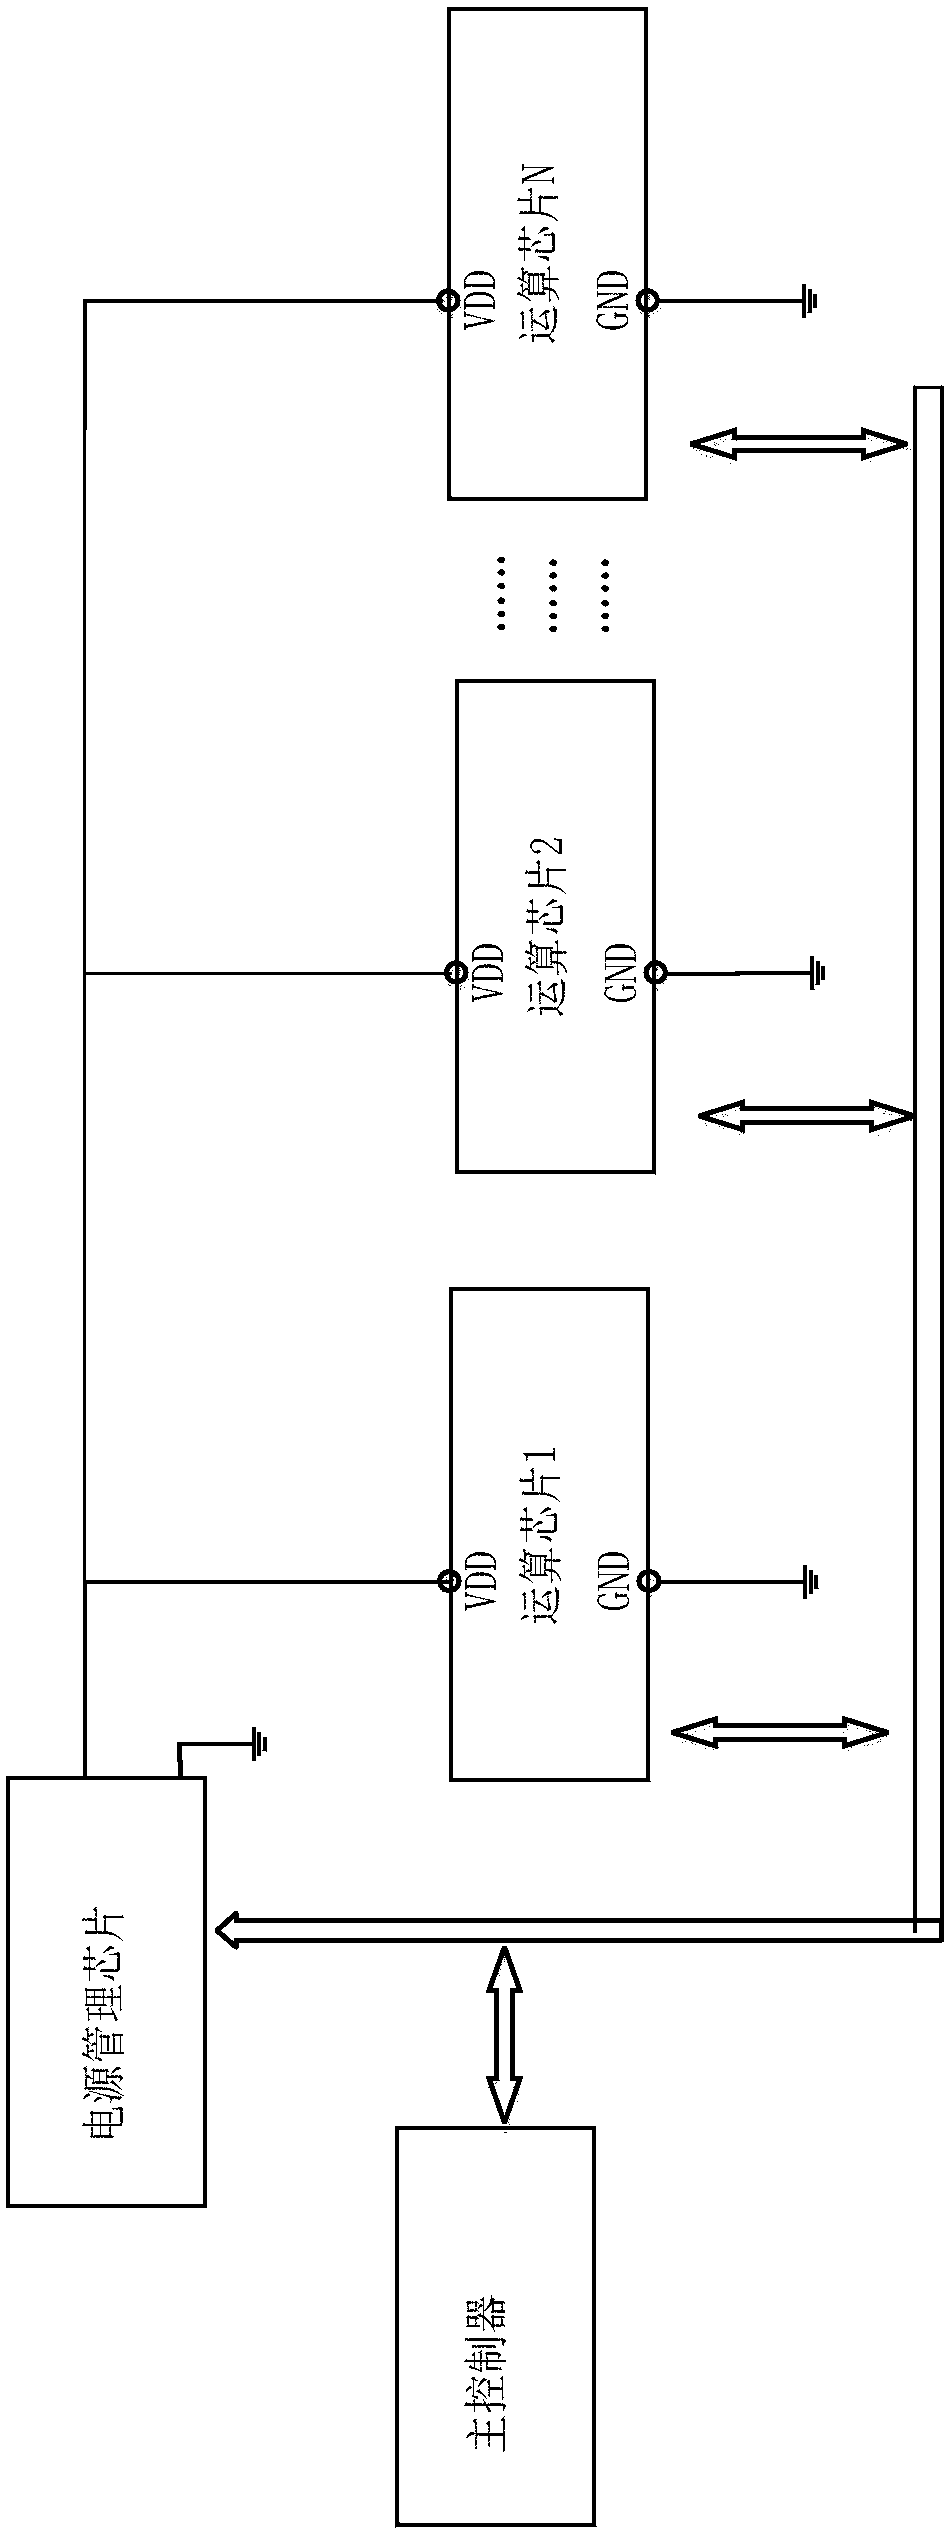 Dynamic voltage adjusting system and method